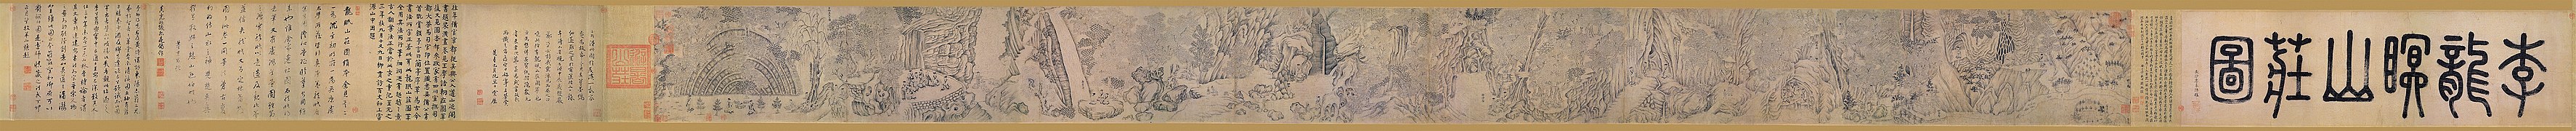 Landhuis in de bergen, een handrol van Li Gonglin (collectie Nationaal Paleismuseum). De karakters in zegelschrift aan het begin van de rol vermelden de naam van de schilder (hier "Li Longmian") en de titel van het werk.[1]